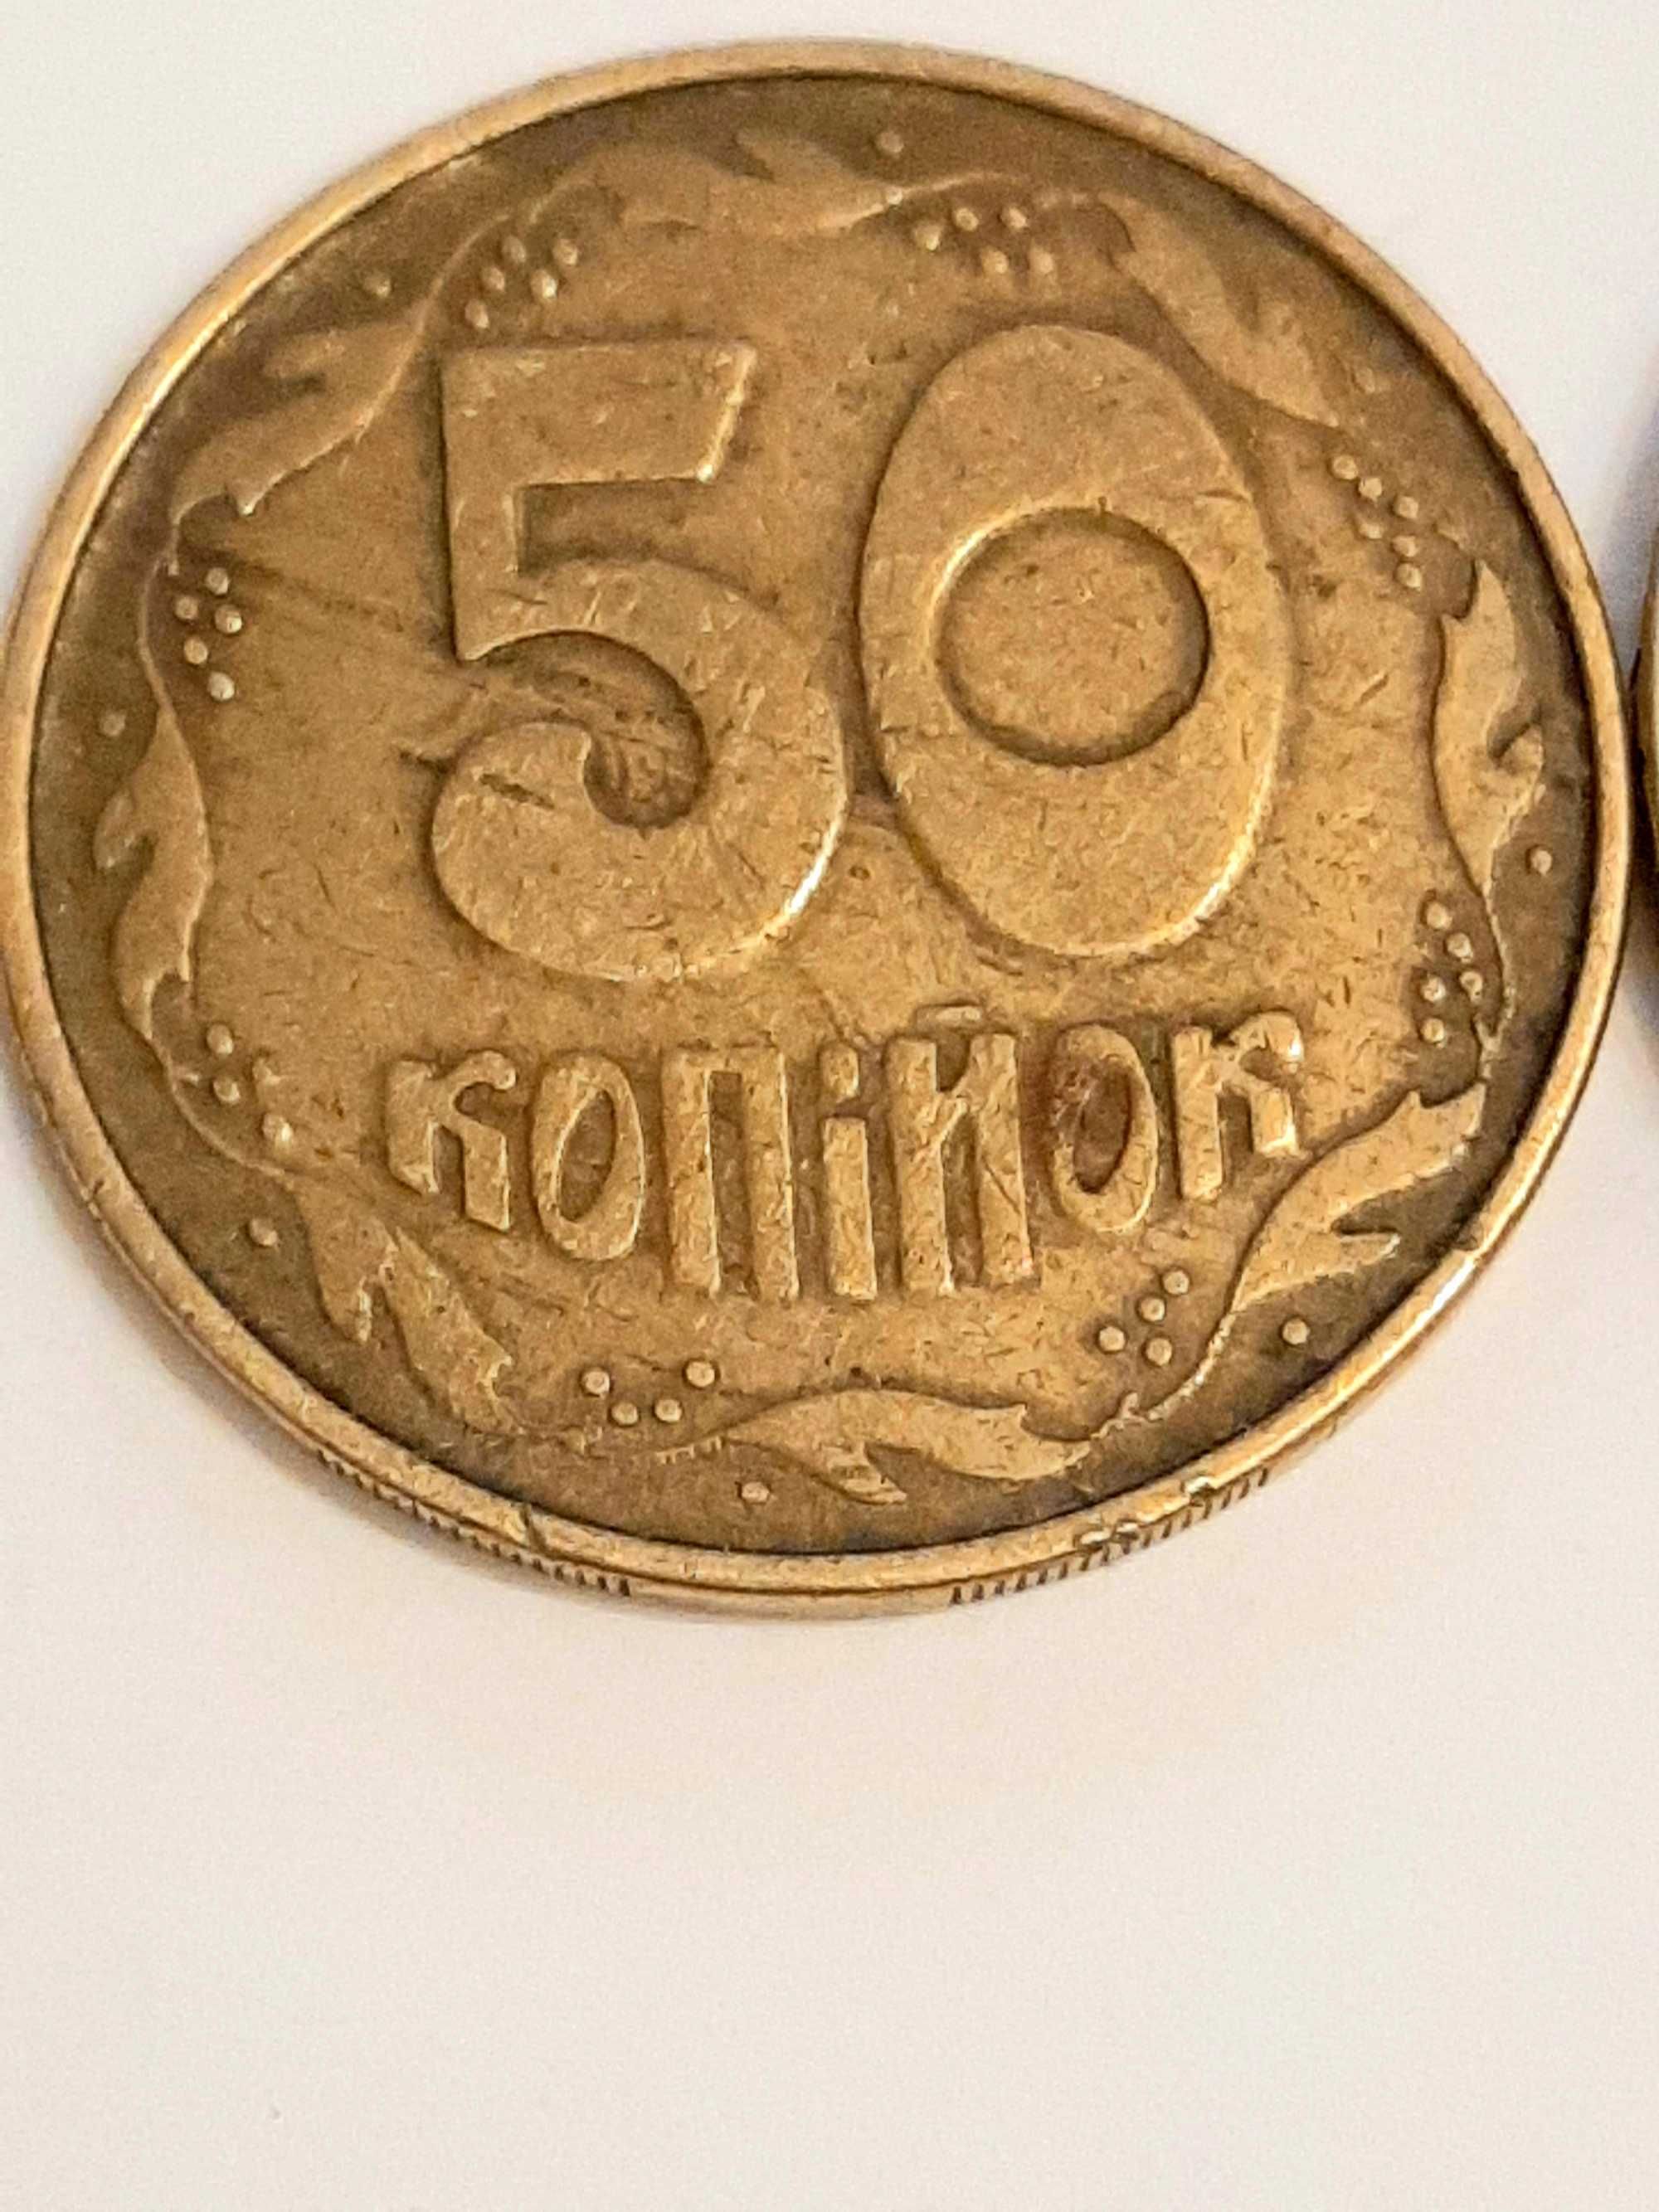 50 коп 1992 год улыбка фальшак 1 грн .1996 .год